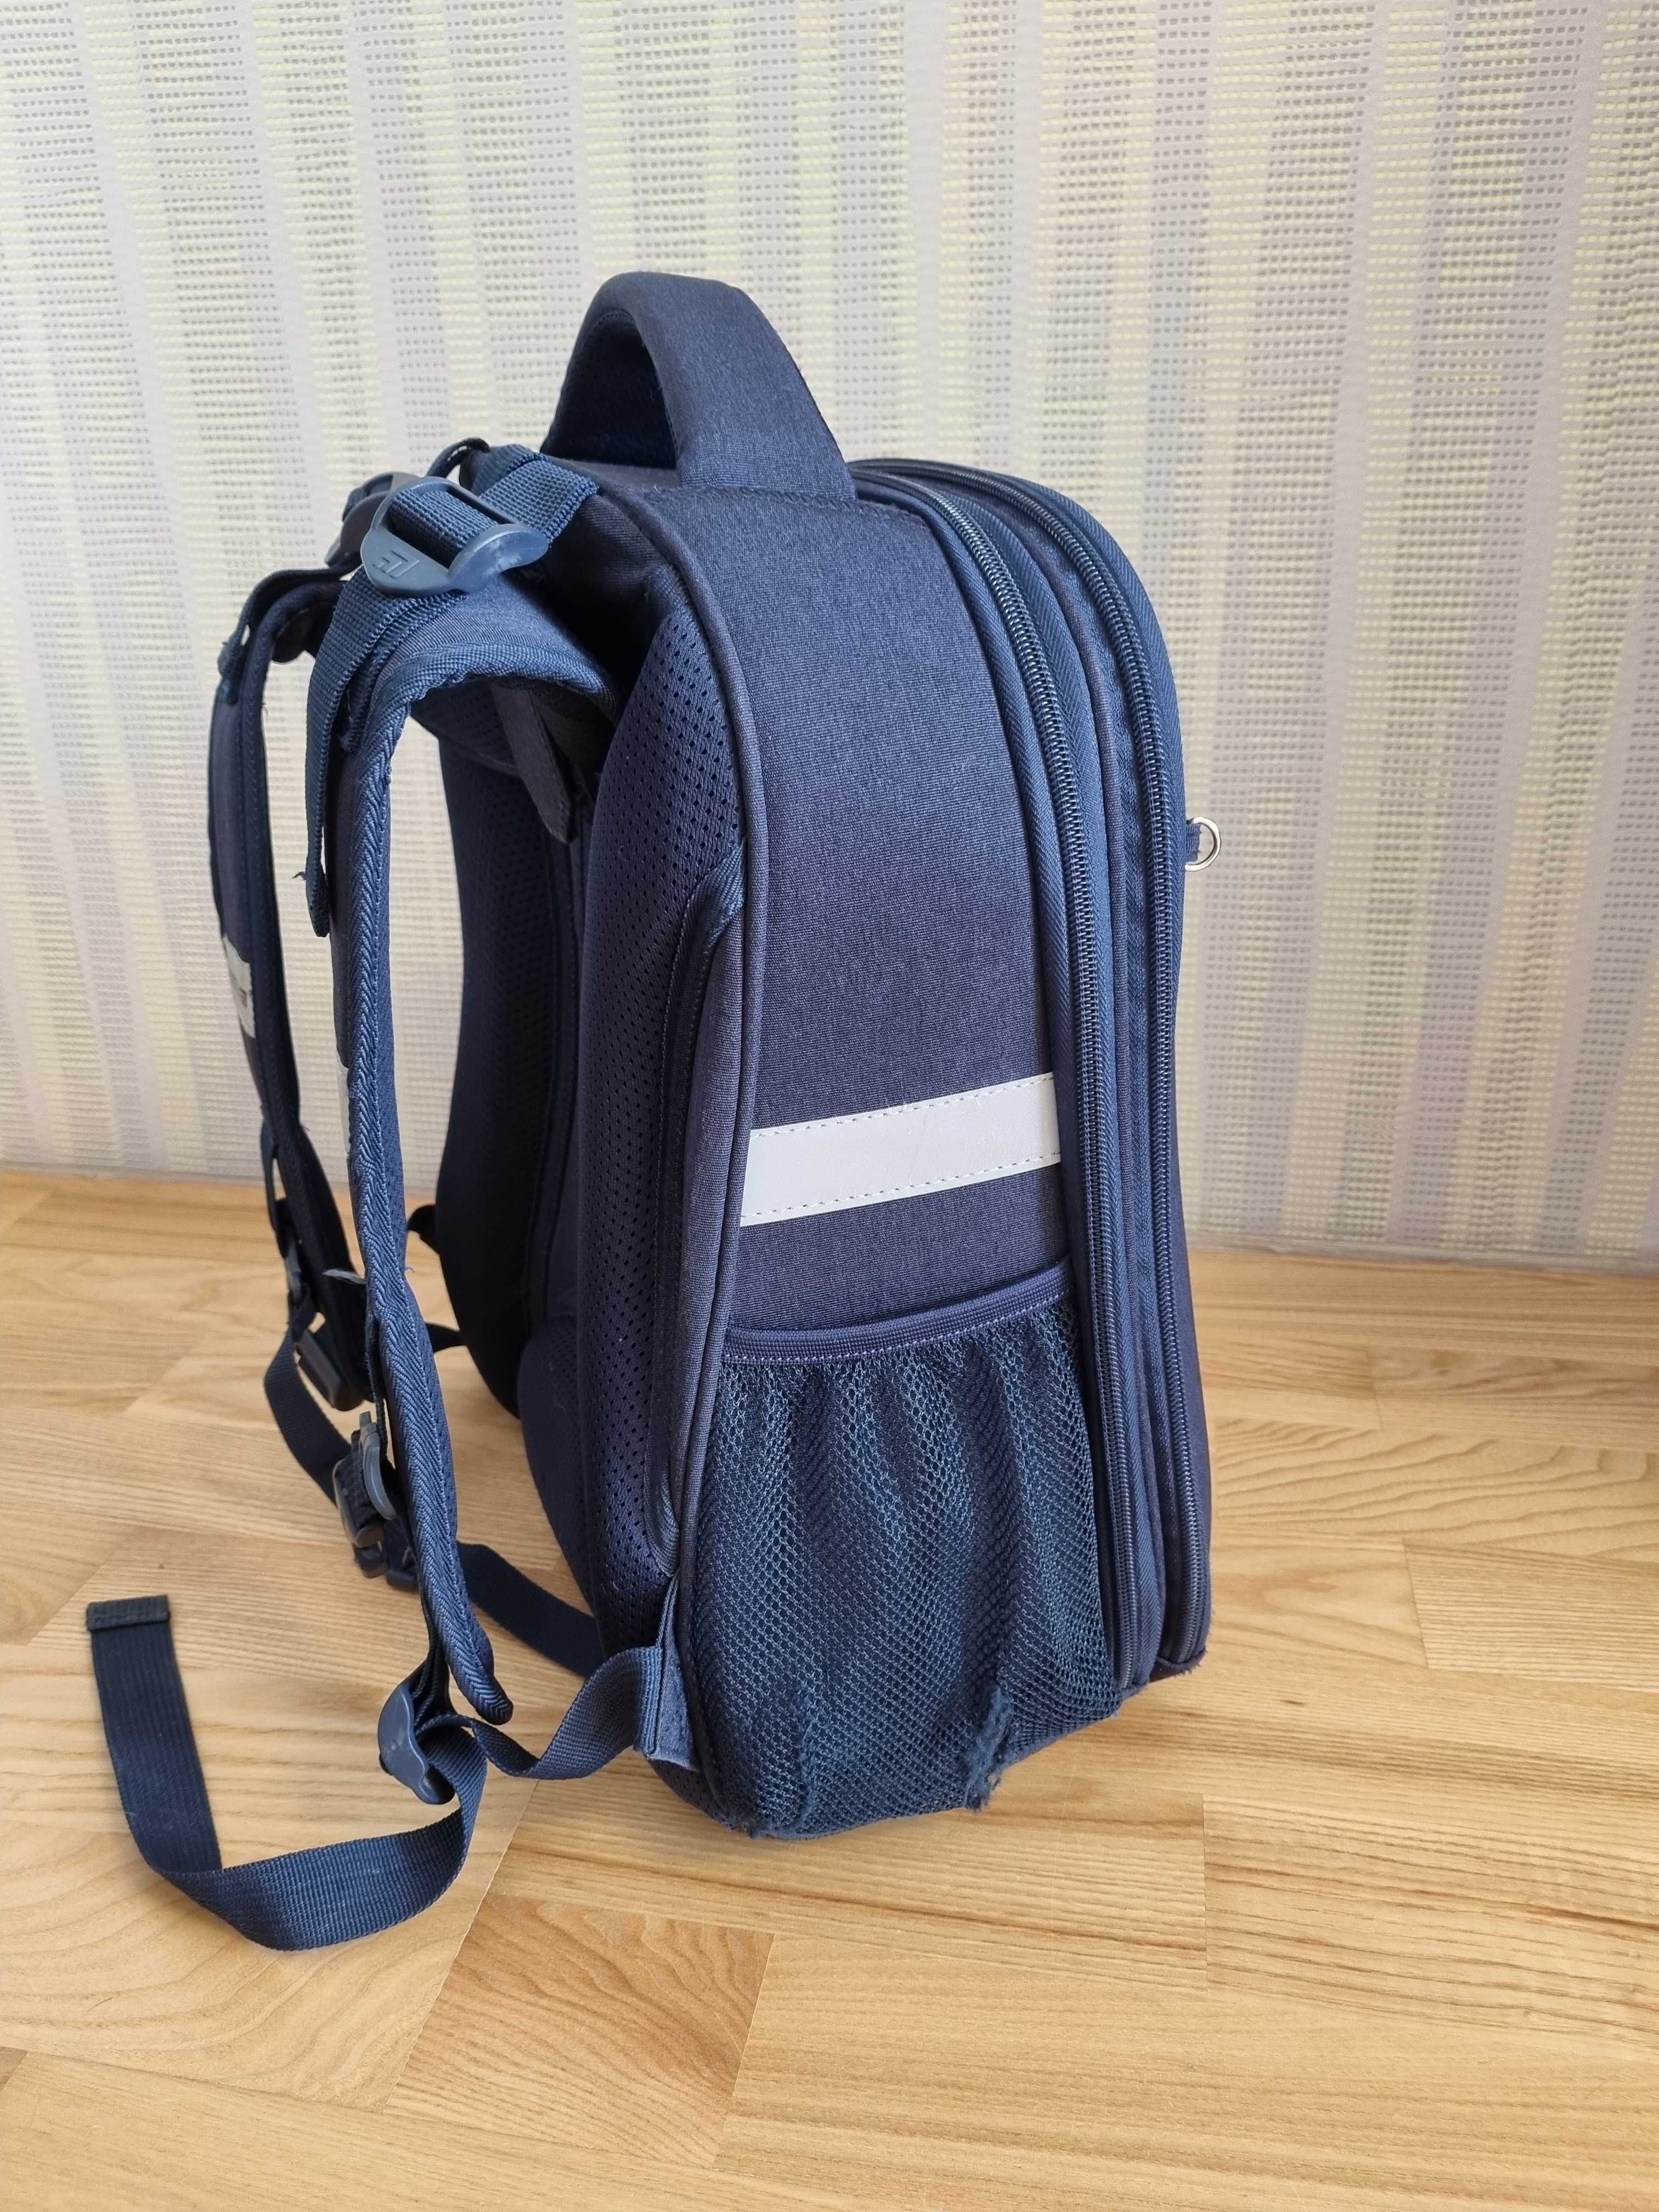 Продам рюкзак шкільний каркасний Kite sport extreme з пеналом